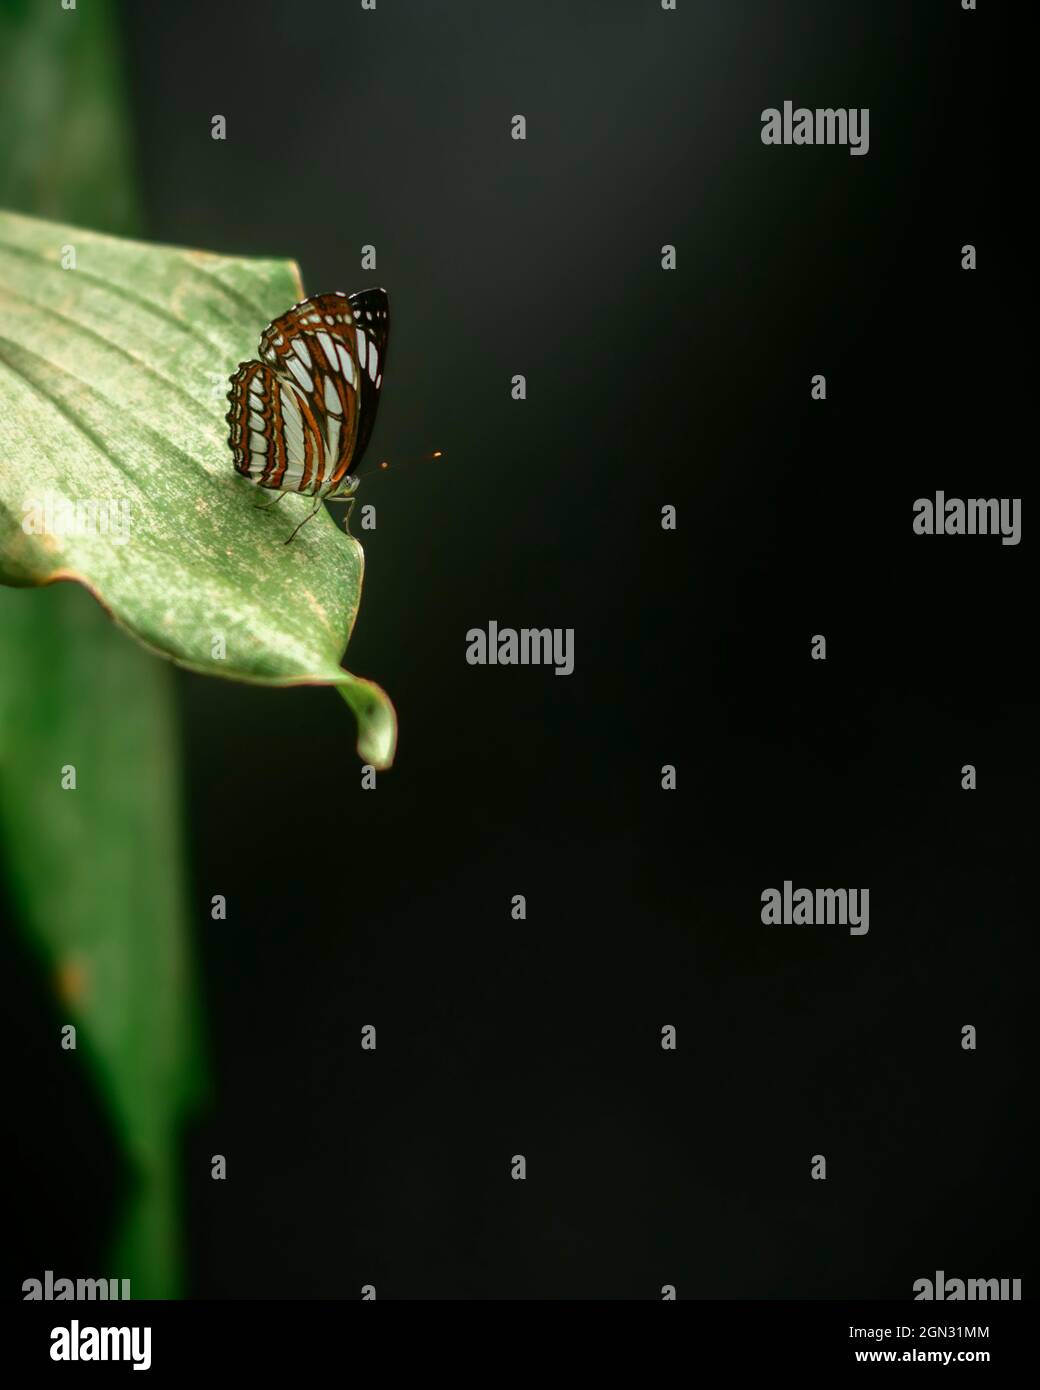 Der wunderschöne Ceylon Tiger Schmetterling liegt am Rand eines grünen Blattes, in einer natürlichen, dunklen Umgebung mit gedämpfter Beleuchtung, weichem Bokeh-Hintergrund und Kopierraum f Stockfoto